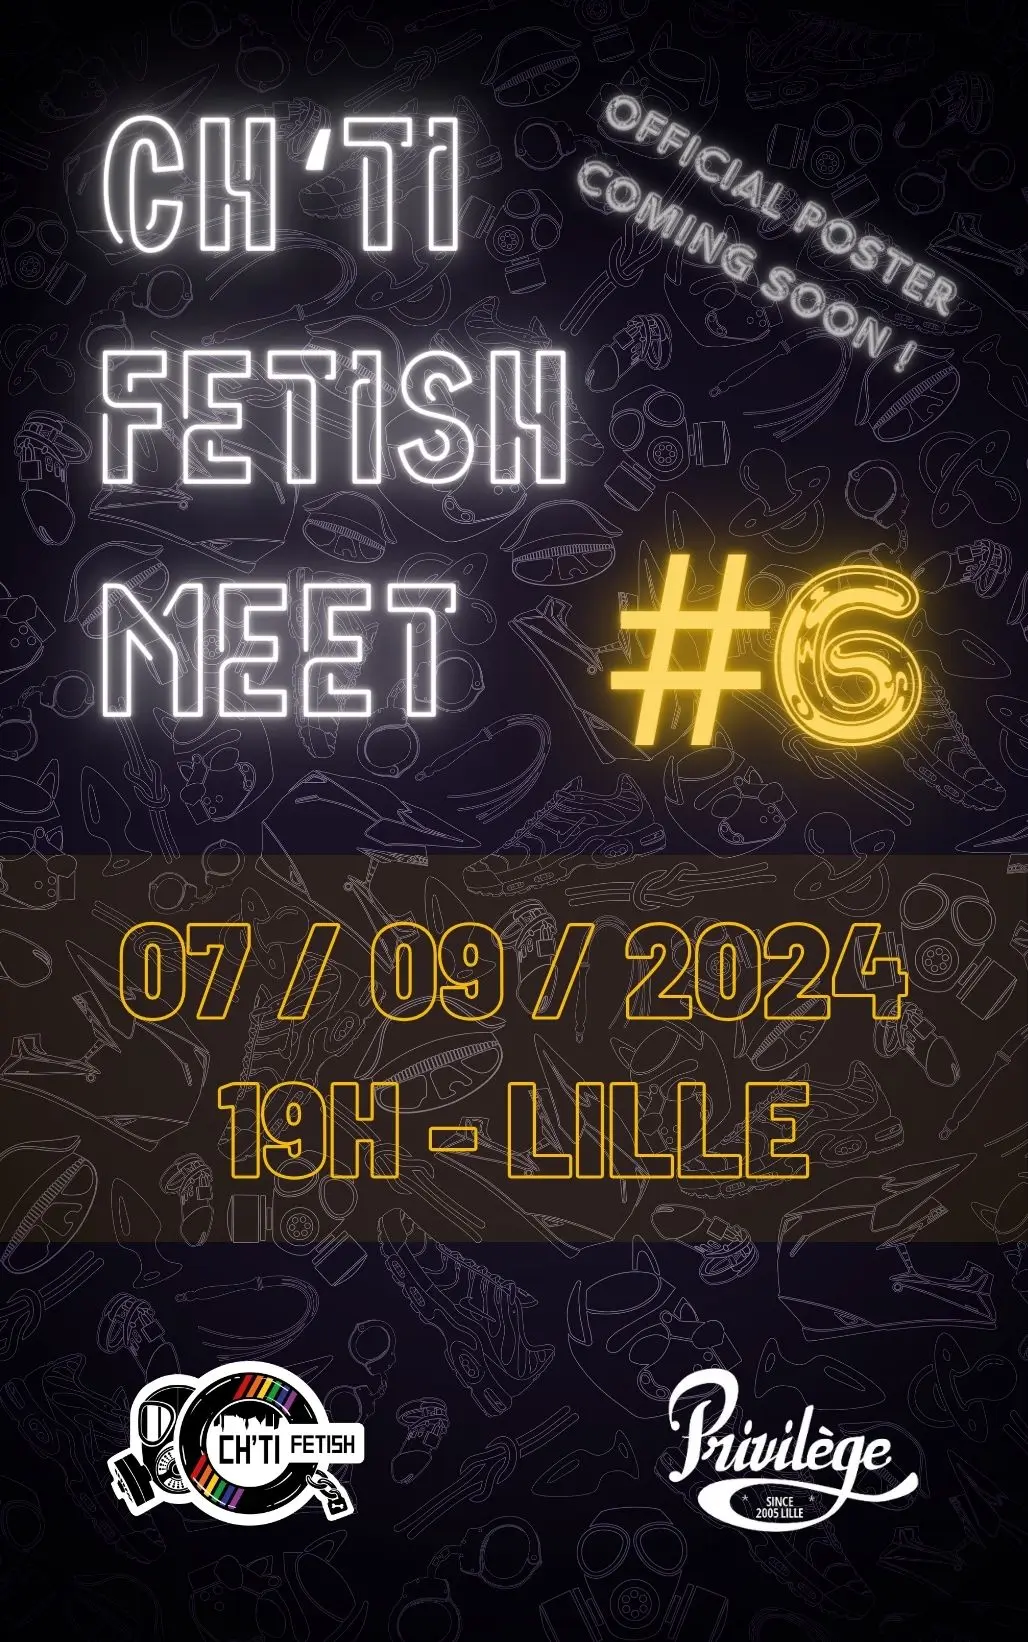 FETISH MEET #6 – 7 September 24